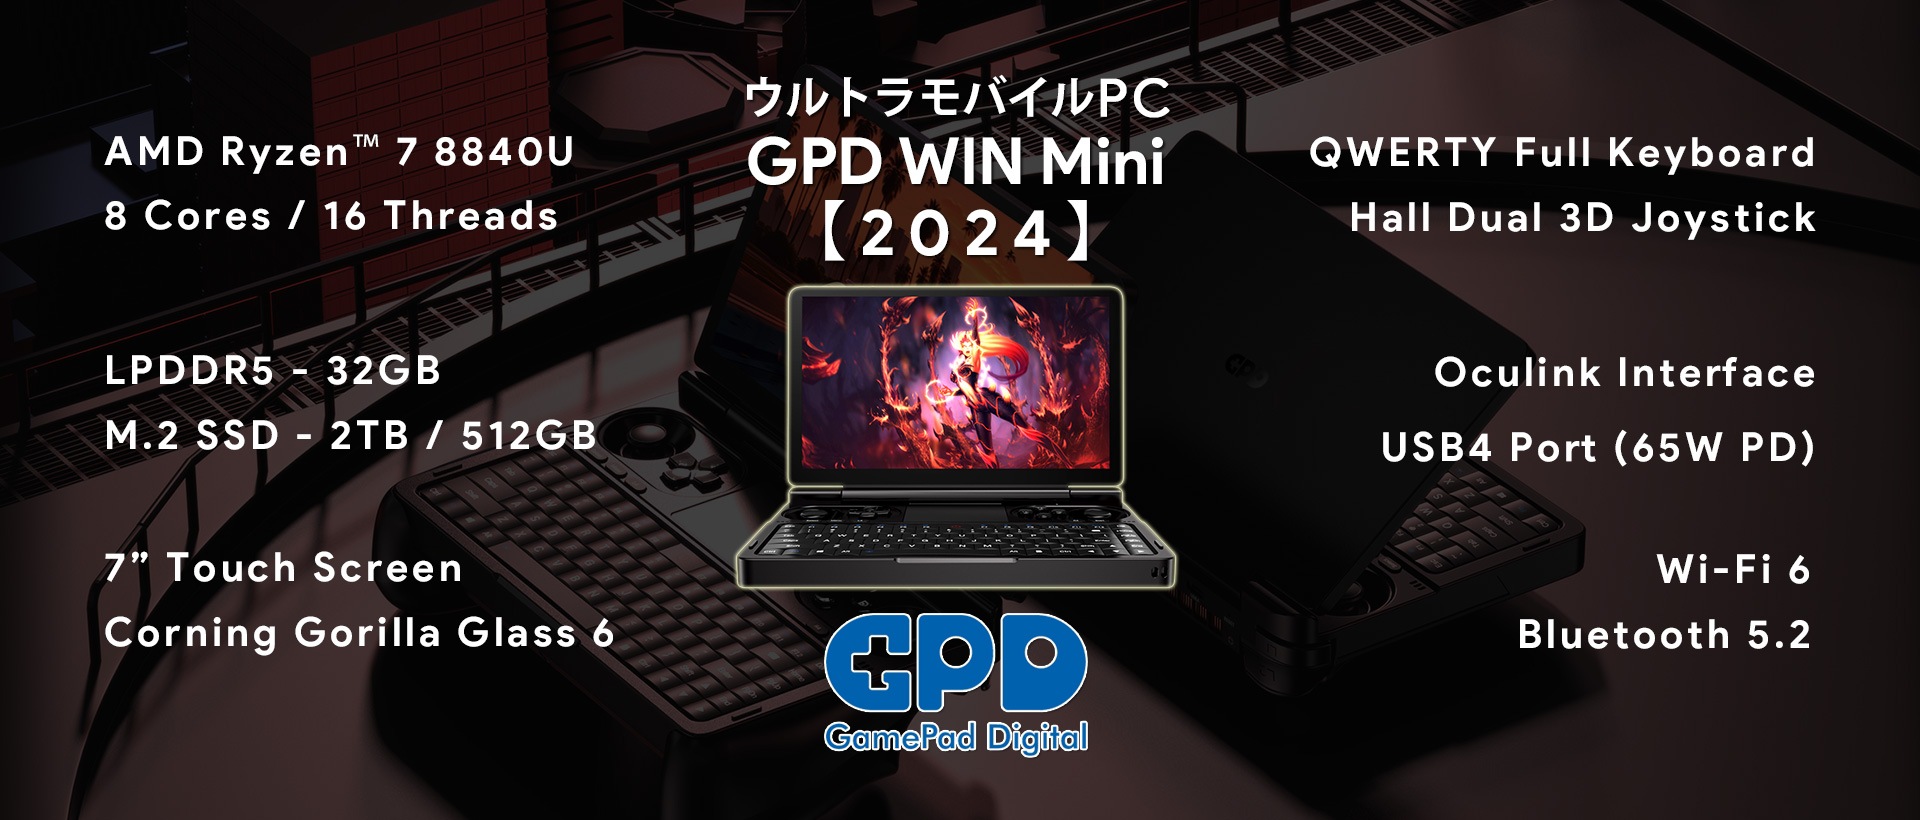 ウルトラモバイルPC「GPD WIN Mini 2024」